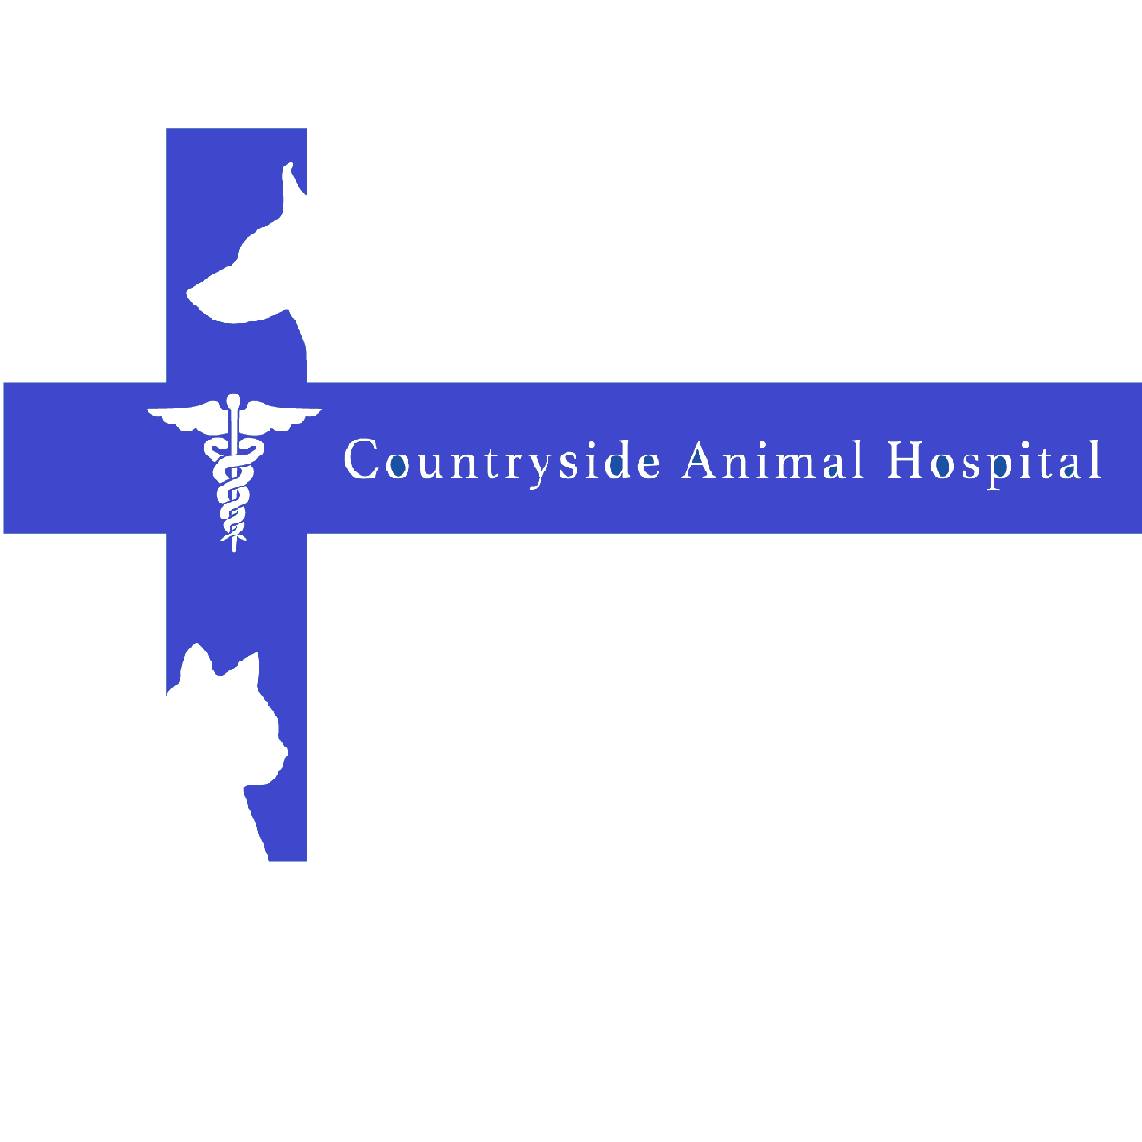 Countryside Animal Hospital 430 N Main St, Moscow Pennsylvania 18444